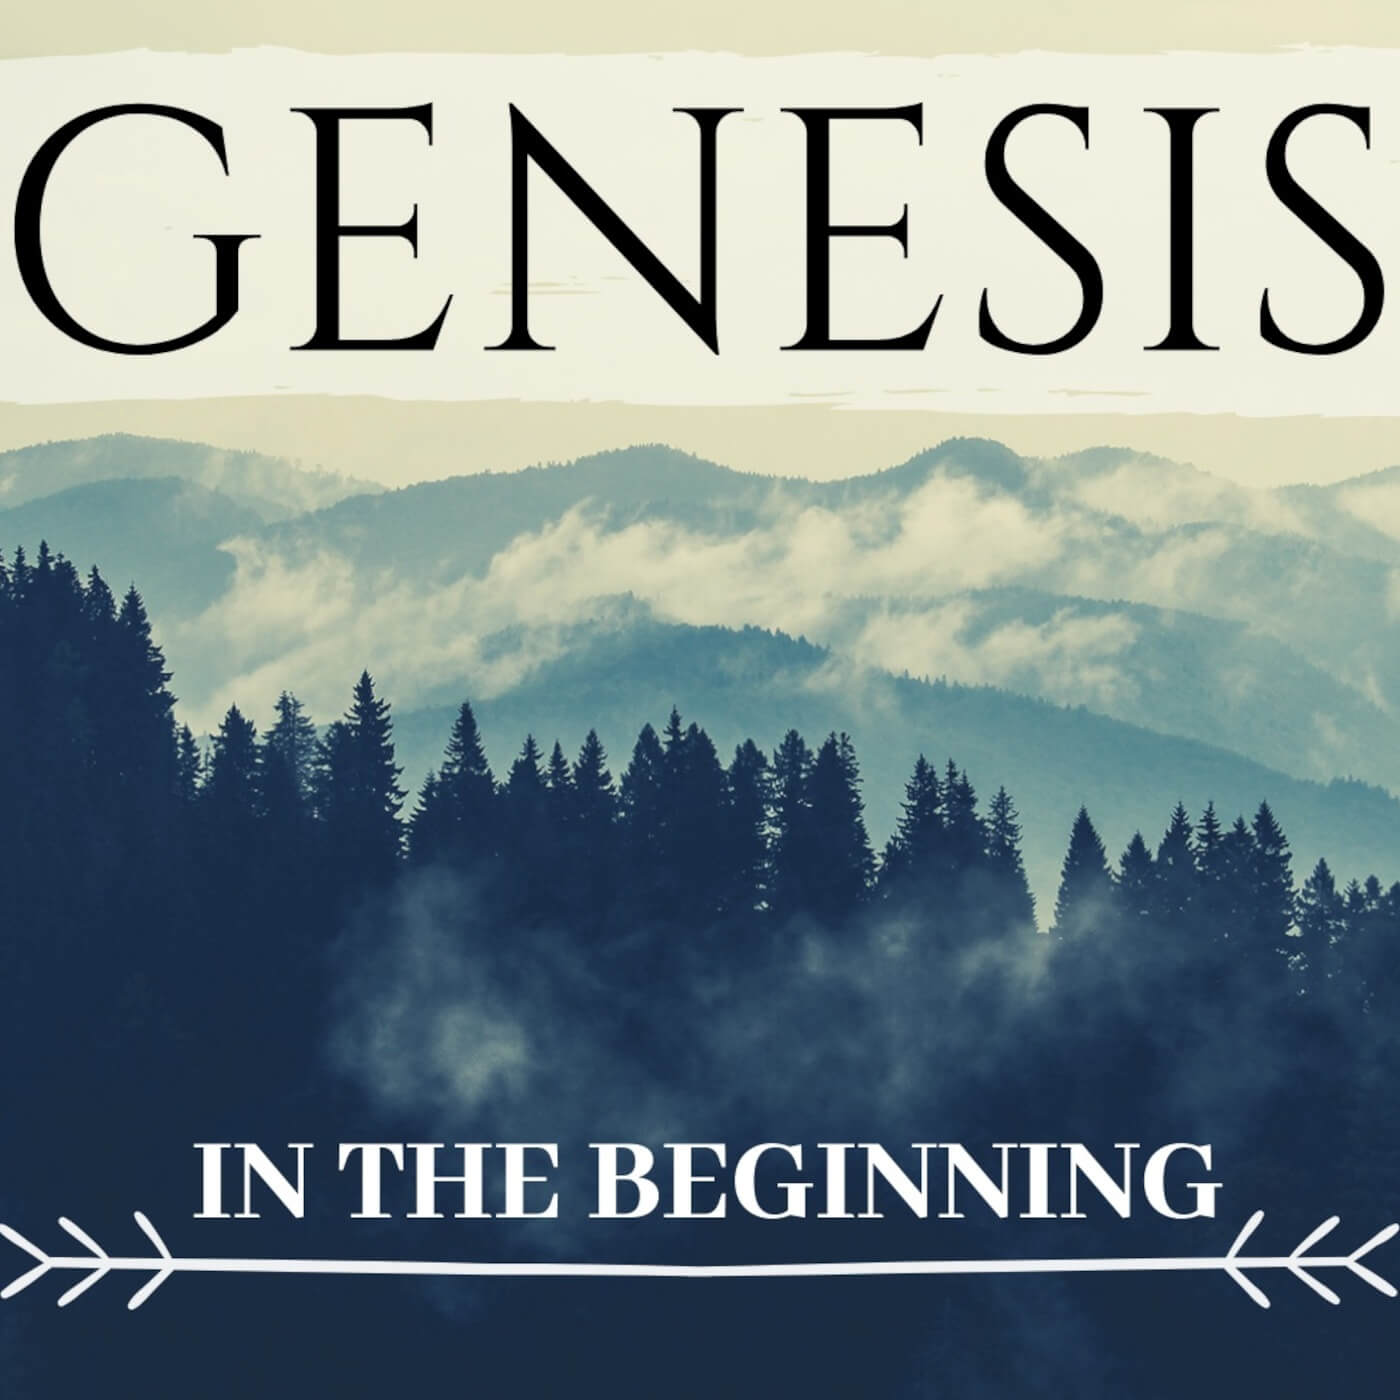 Genesis 3 - Being Human